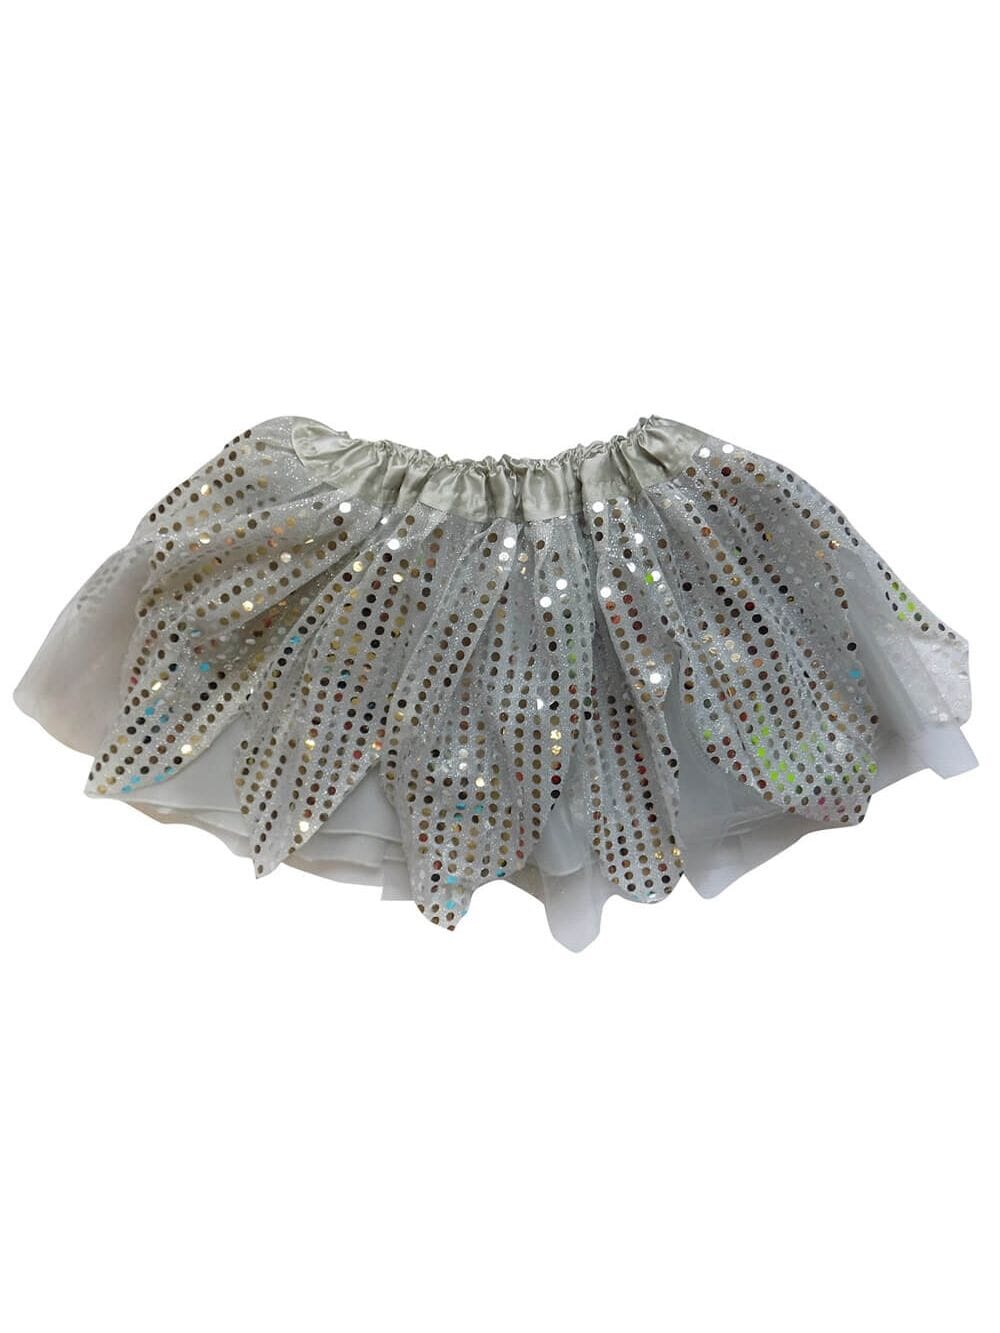 Silver Sparkle Running Tutu Skirt Costume for Girls, Women, Plus - Sydney So Sweet